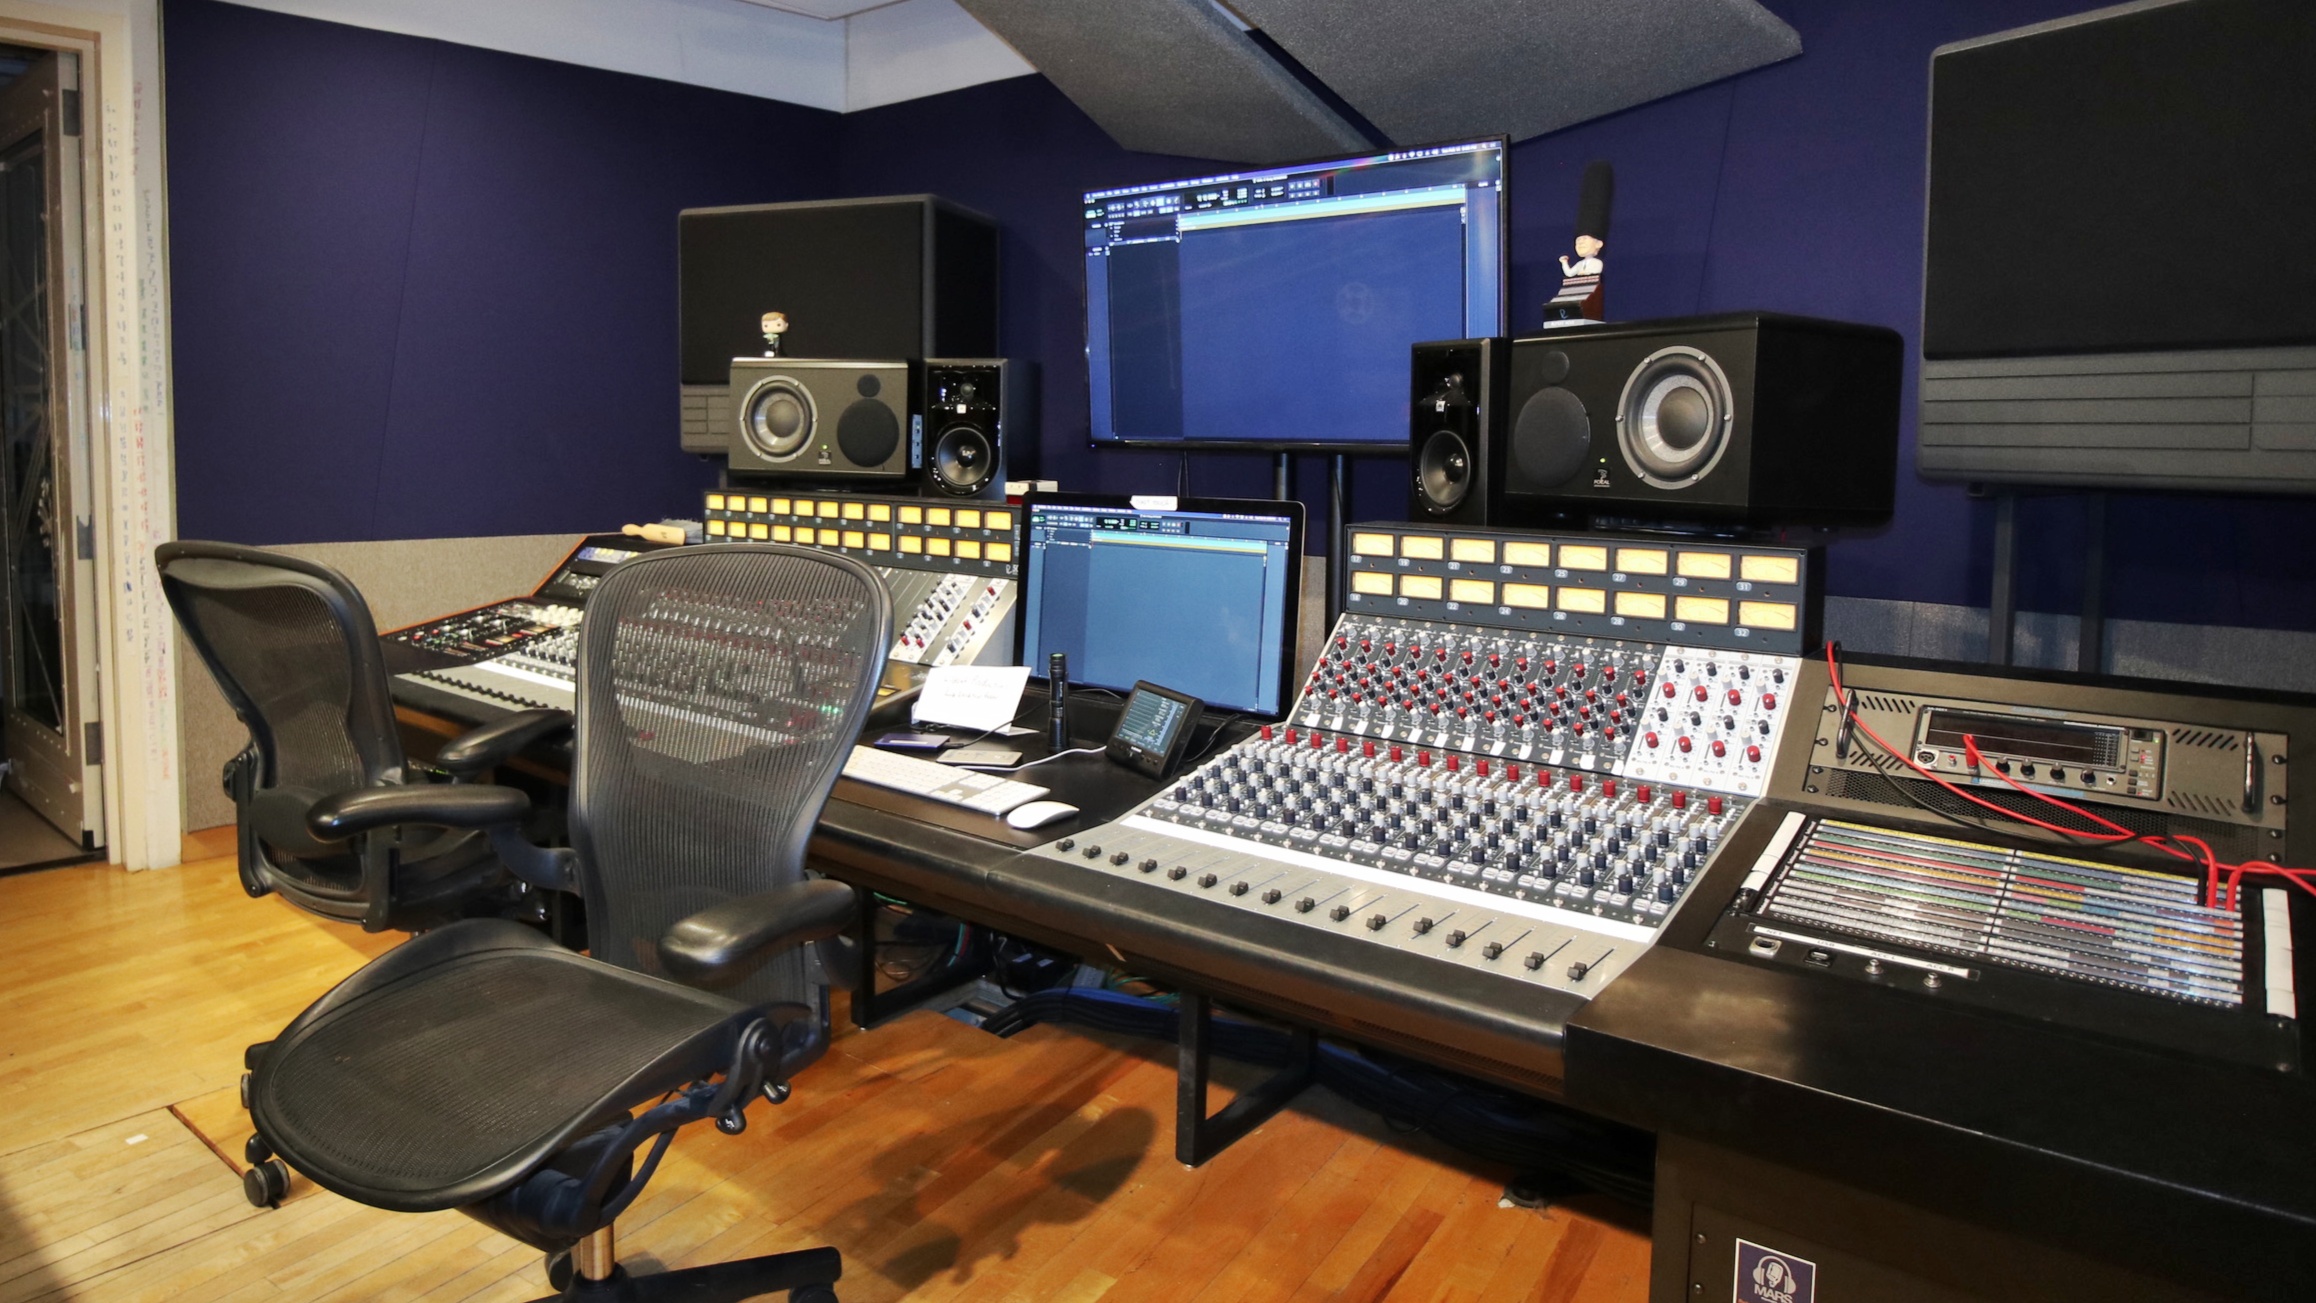 Millitrax Studio